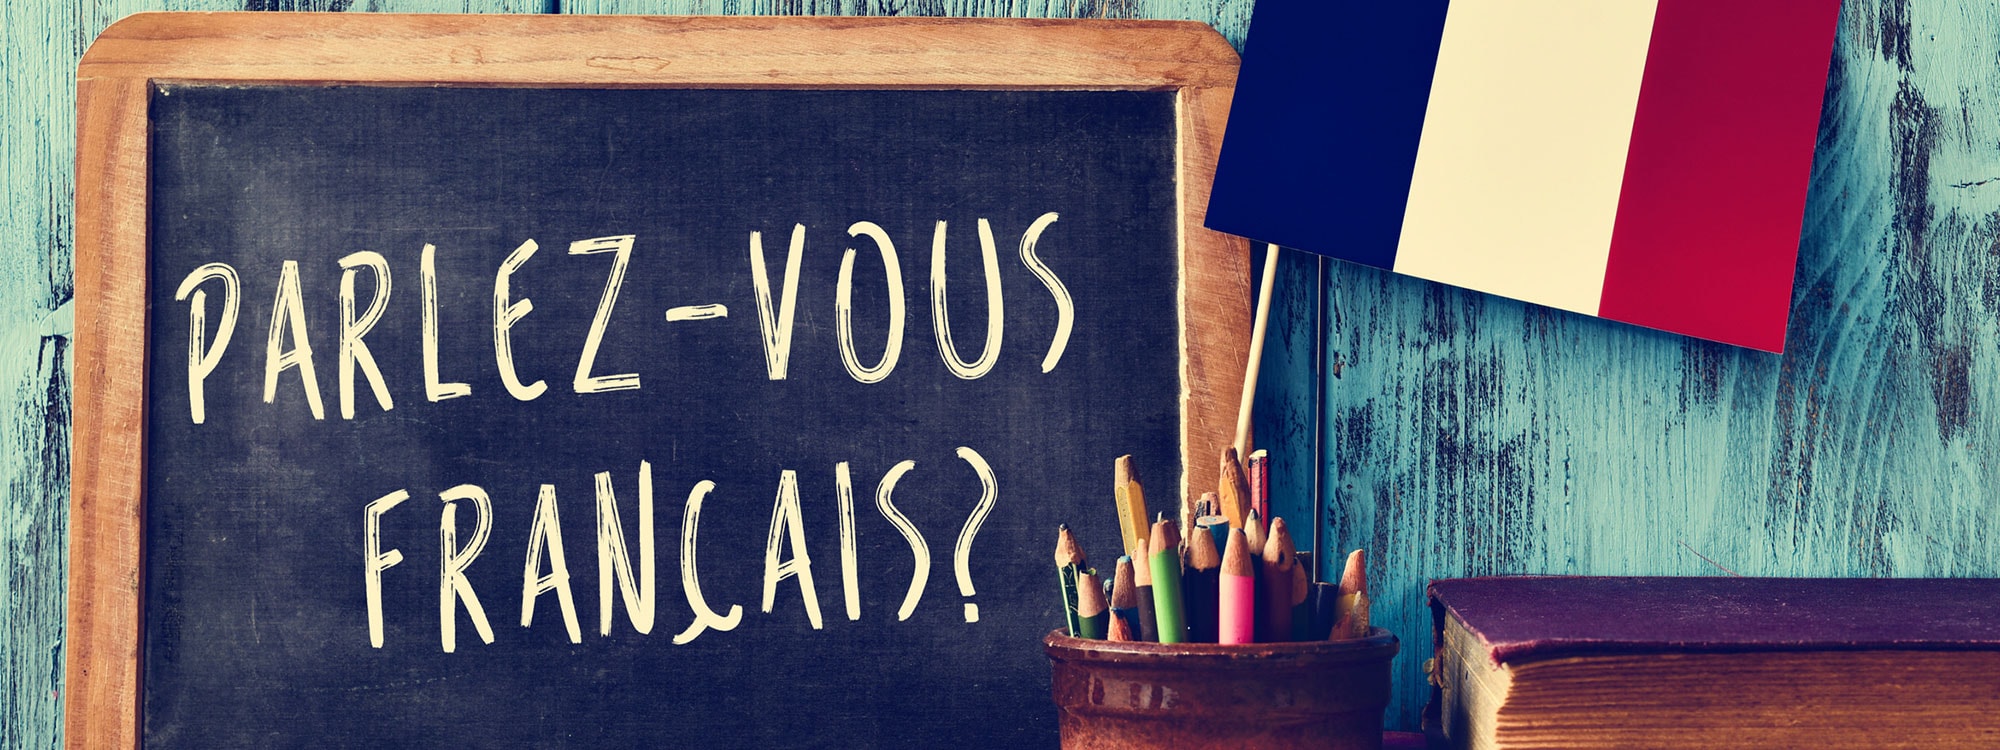 Le français, 5ème langue la plus parlée dans le monde